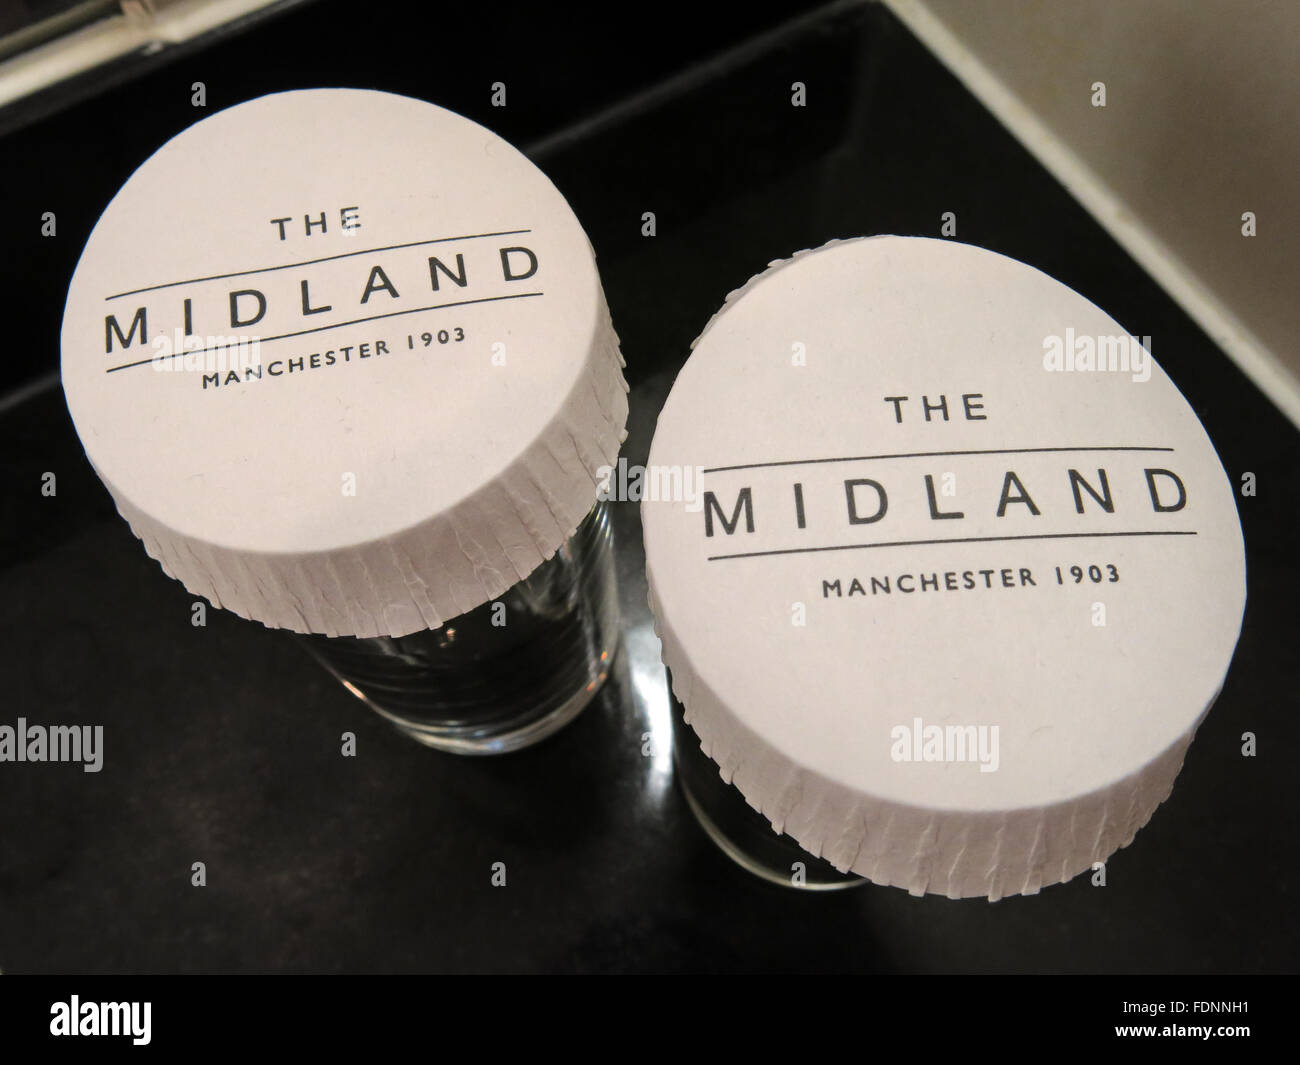 The Midland 1903 - Glasses, Midland Hotel, Manchester, England, UK Stock Photo